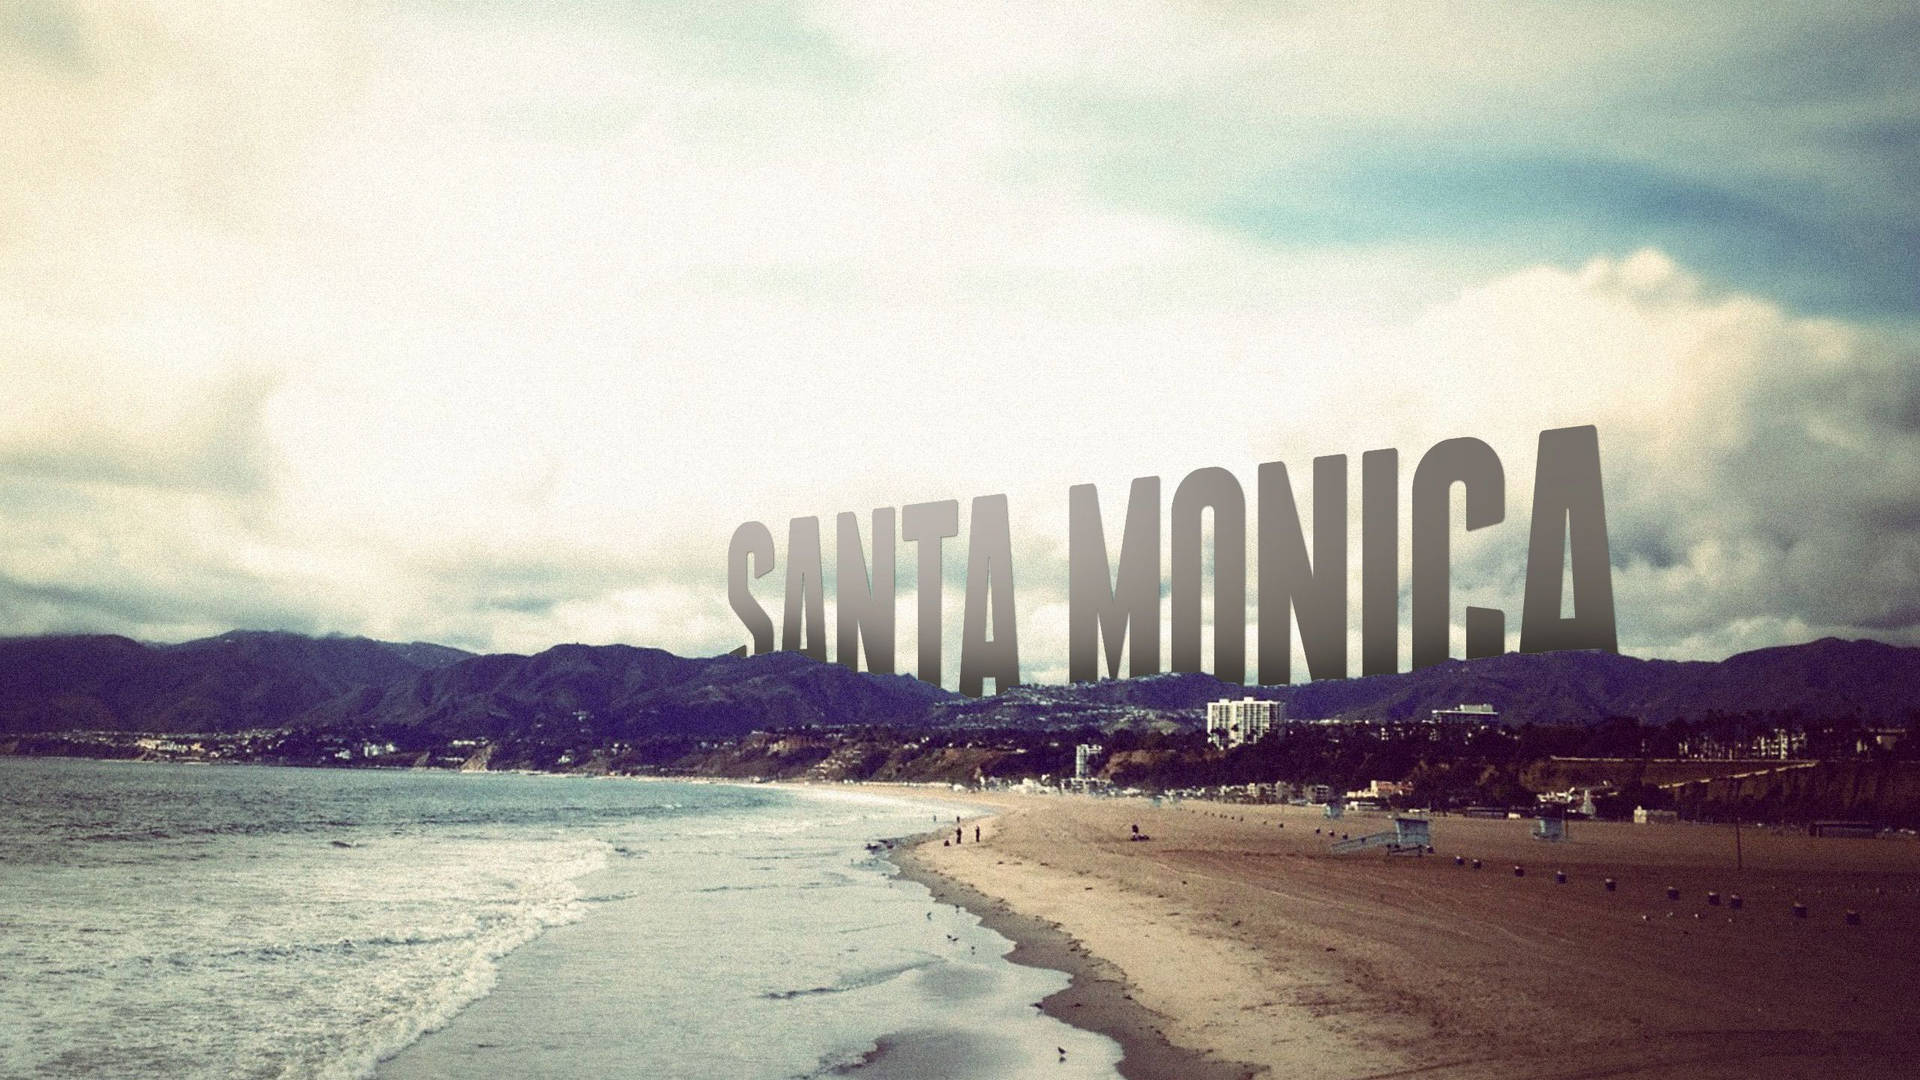 Santa Monica Text Mountain Wallpaper